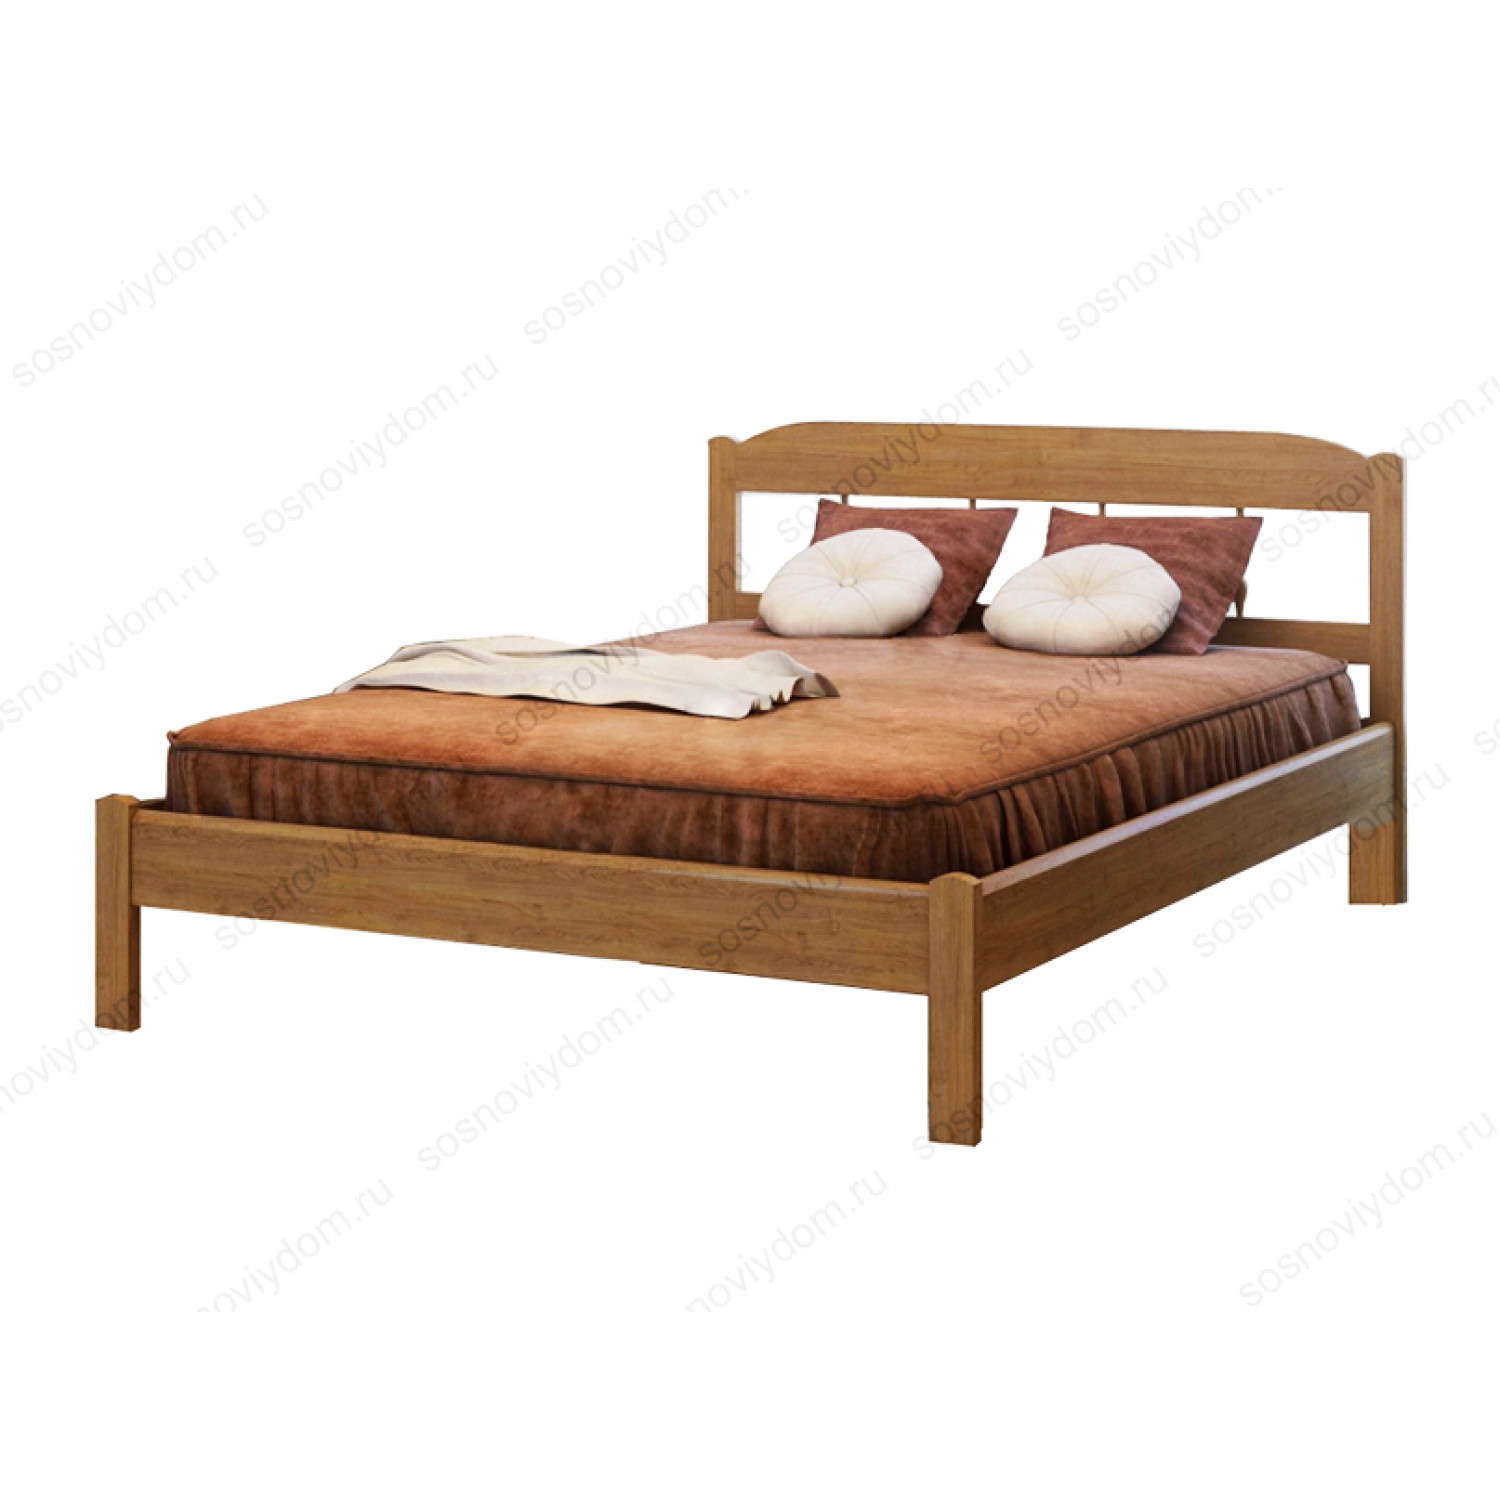 Купить кровать из массива в спб